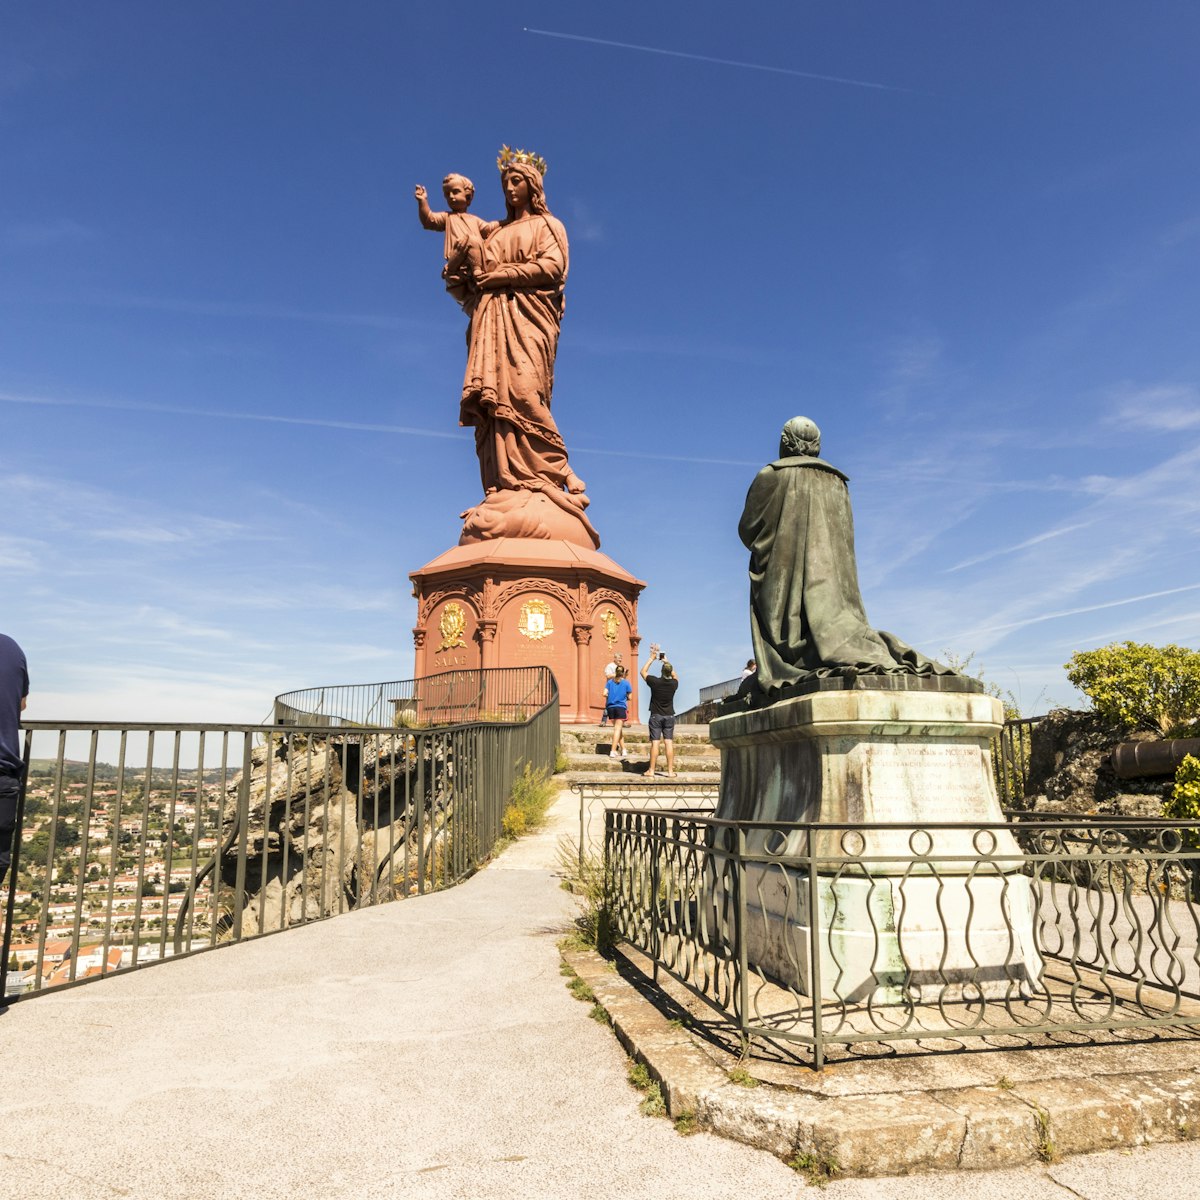 The statue of Notre-Dame de France, Le Puy-en-Velay, France.